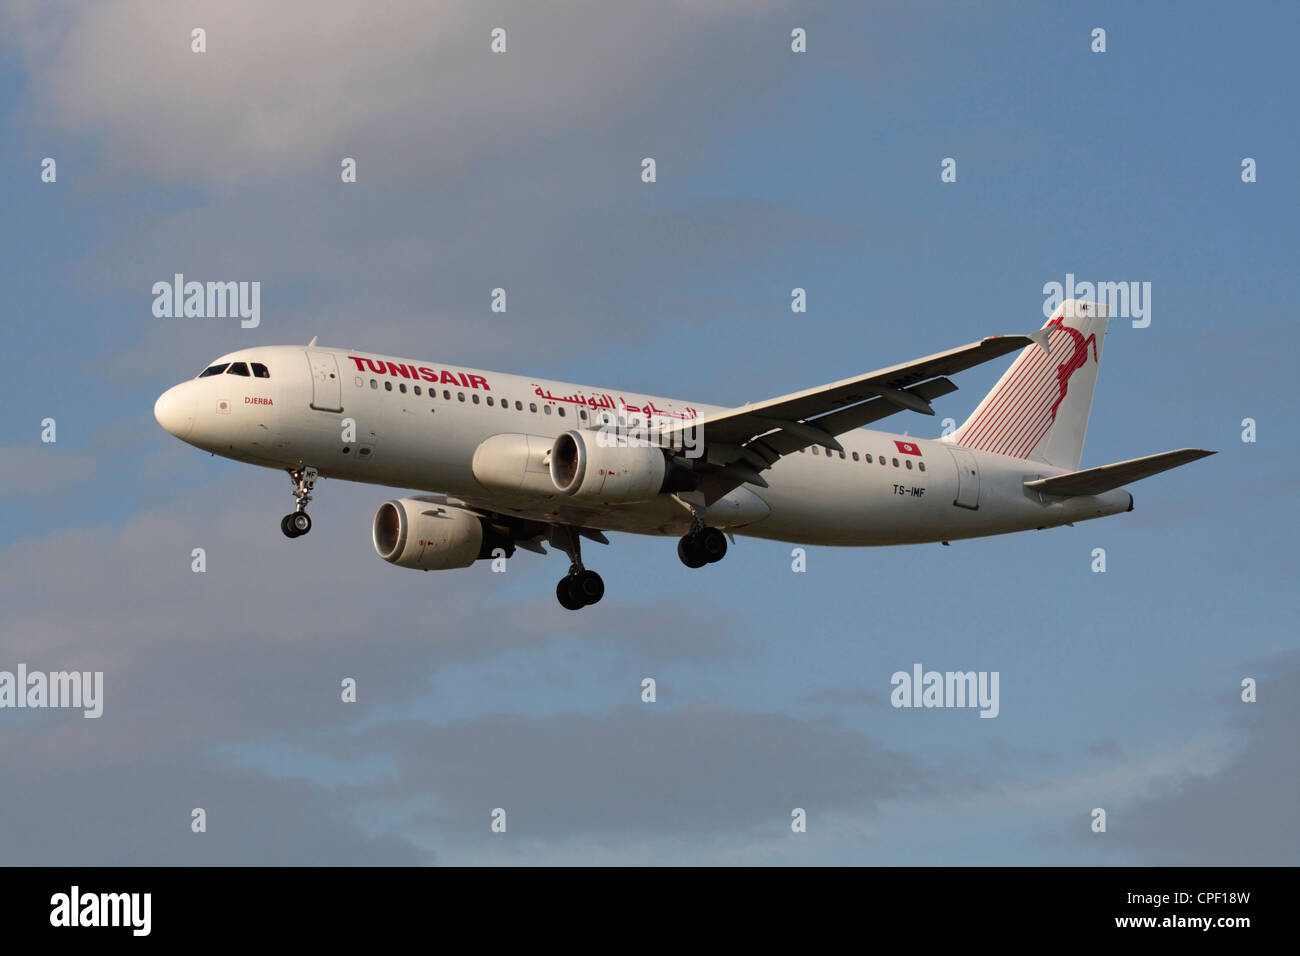 Tunisair Airbus A320 aereo commerciale battenti sulla rotta di avvicinamento Foto Stock